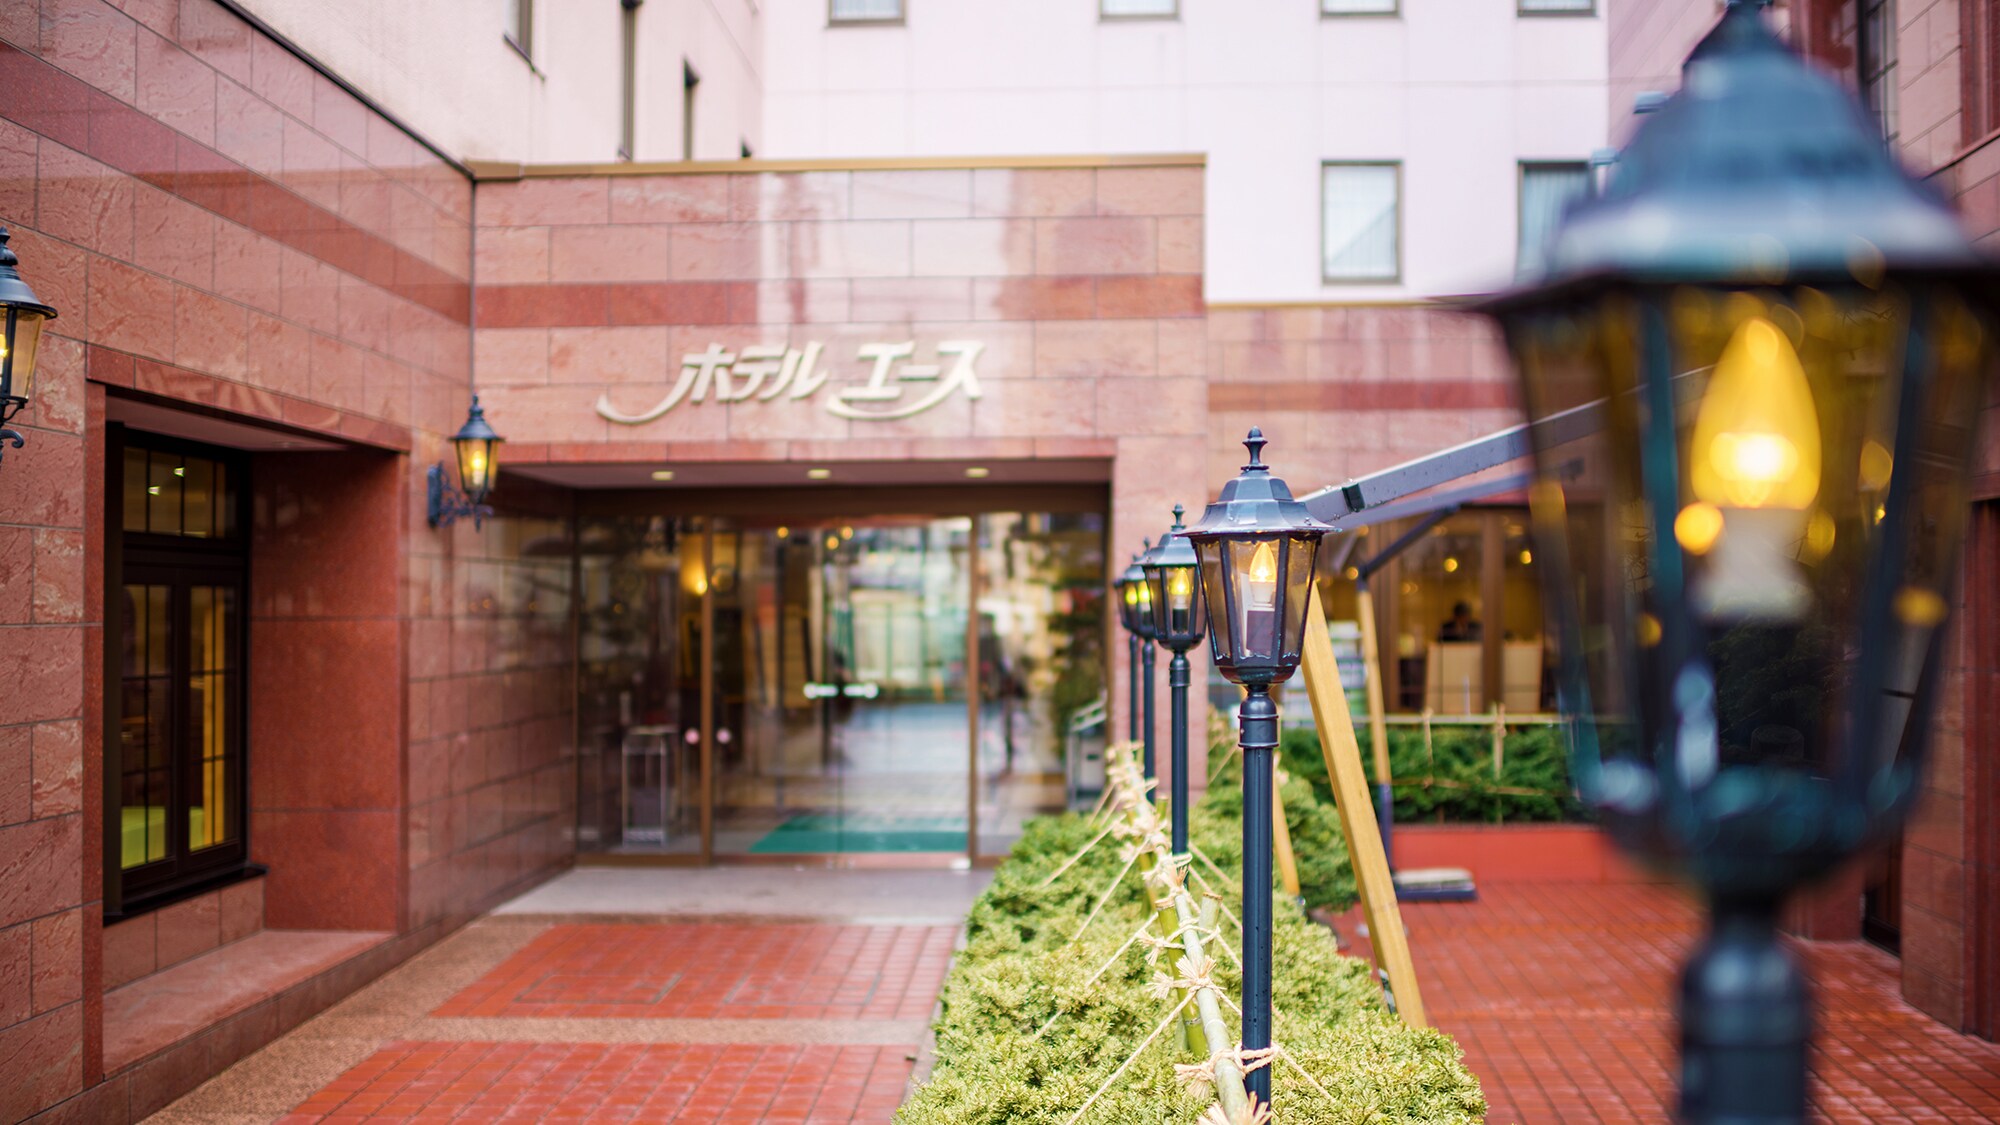 Hotel photo 44 of Hotel Ace Morioka.